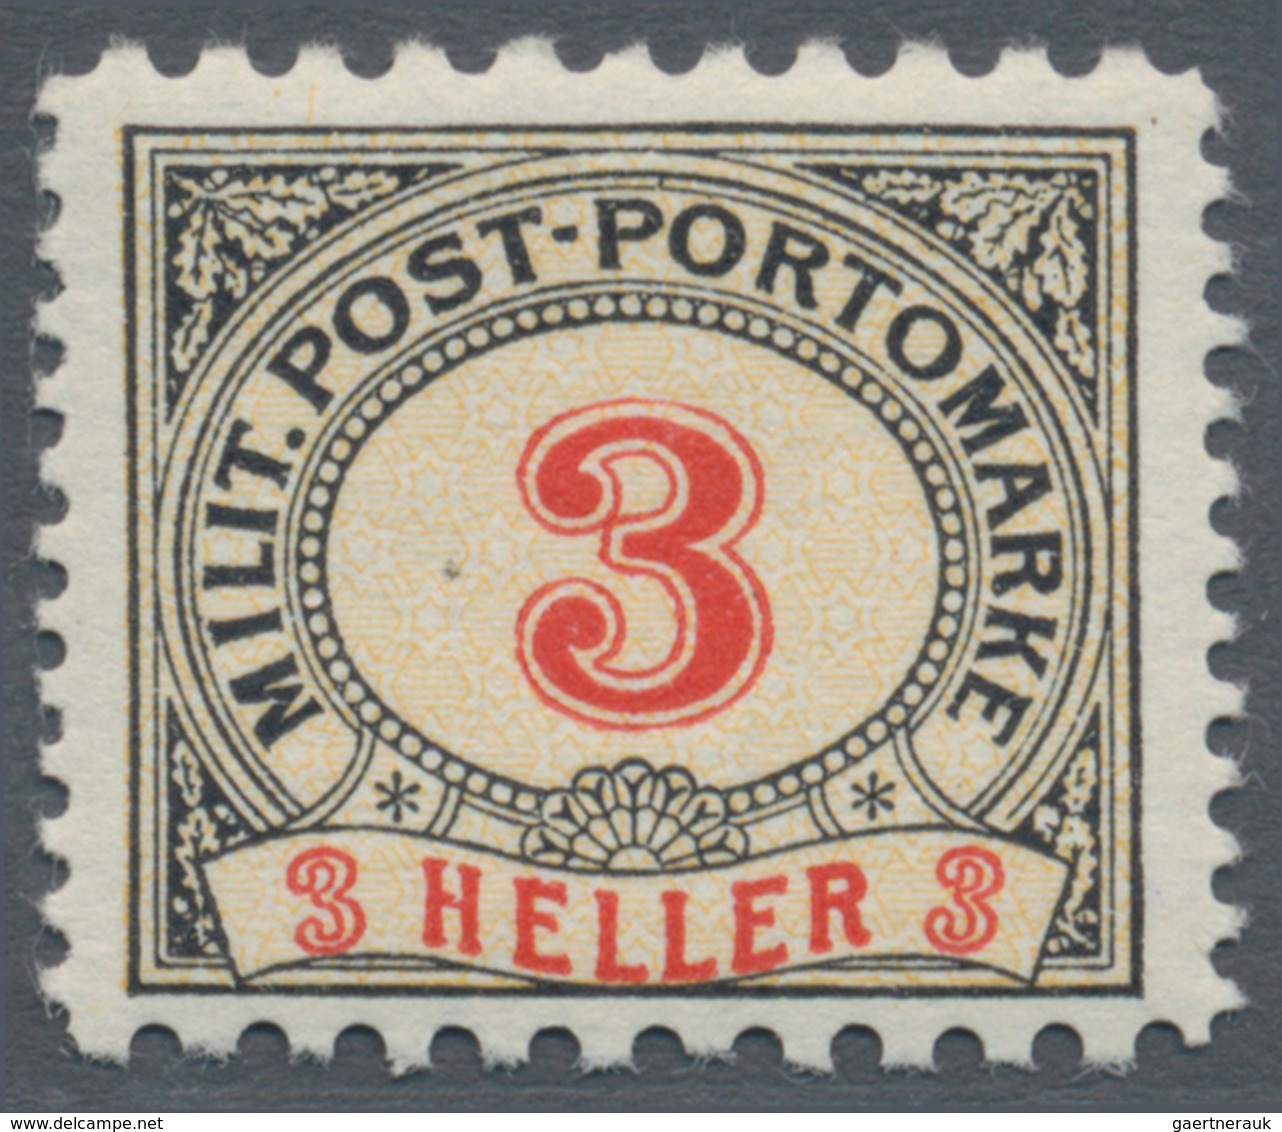 Bosnien und Herzegowina (Österreich 1879/1918) - Portomarken: 1904, Ziffern-Portomarken 1 H bis 200